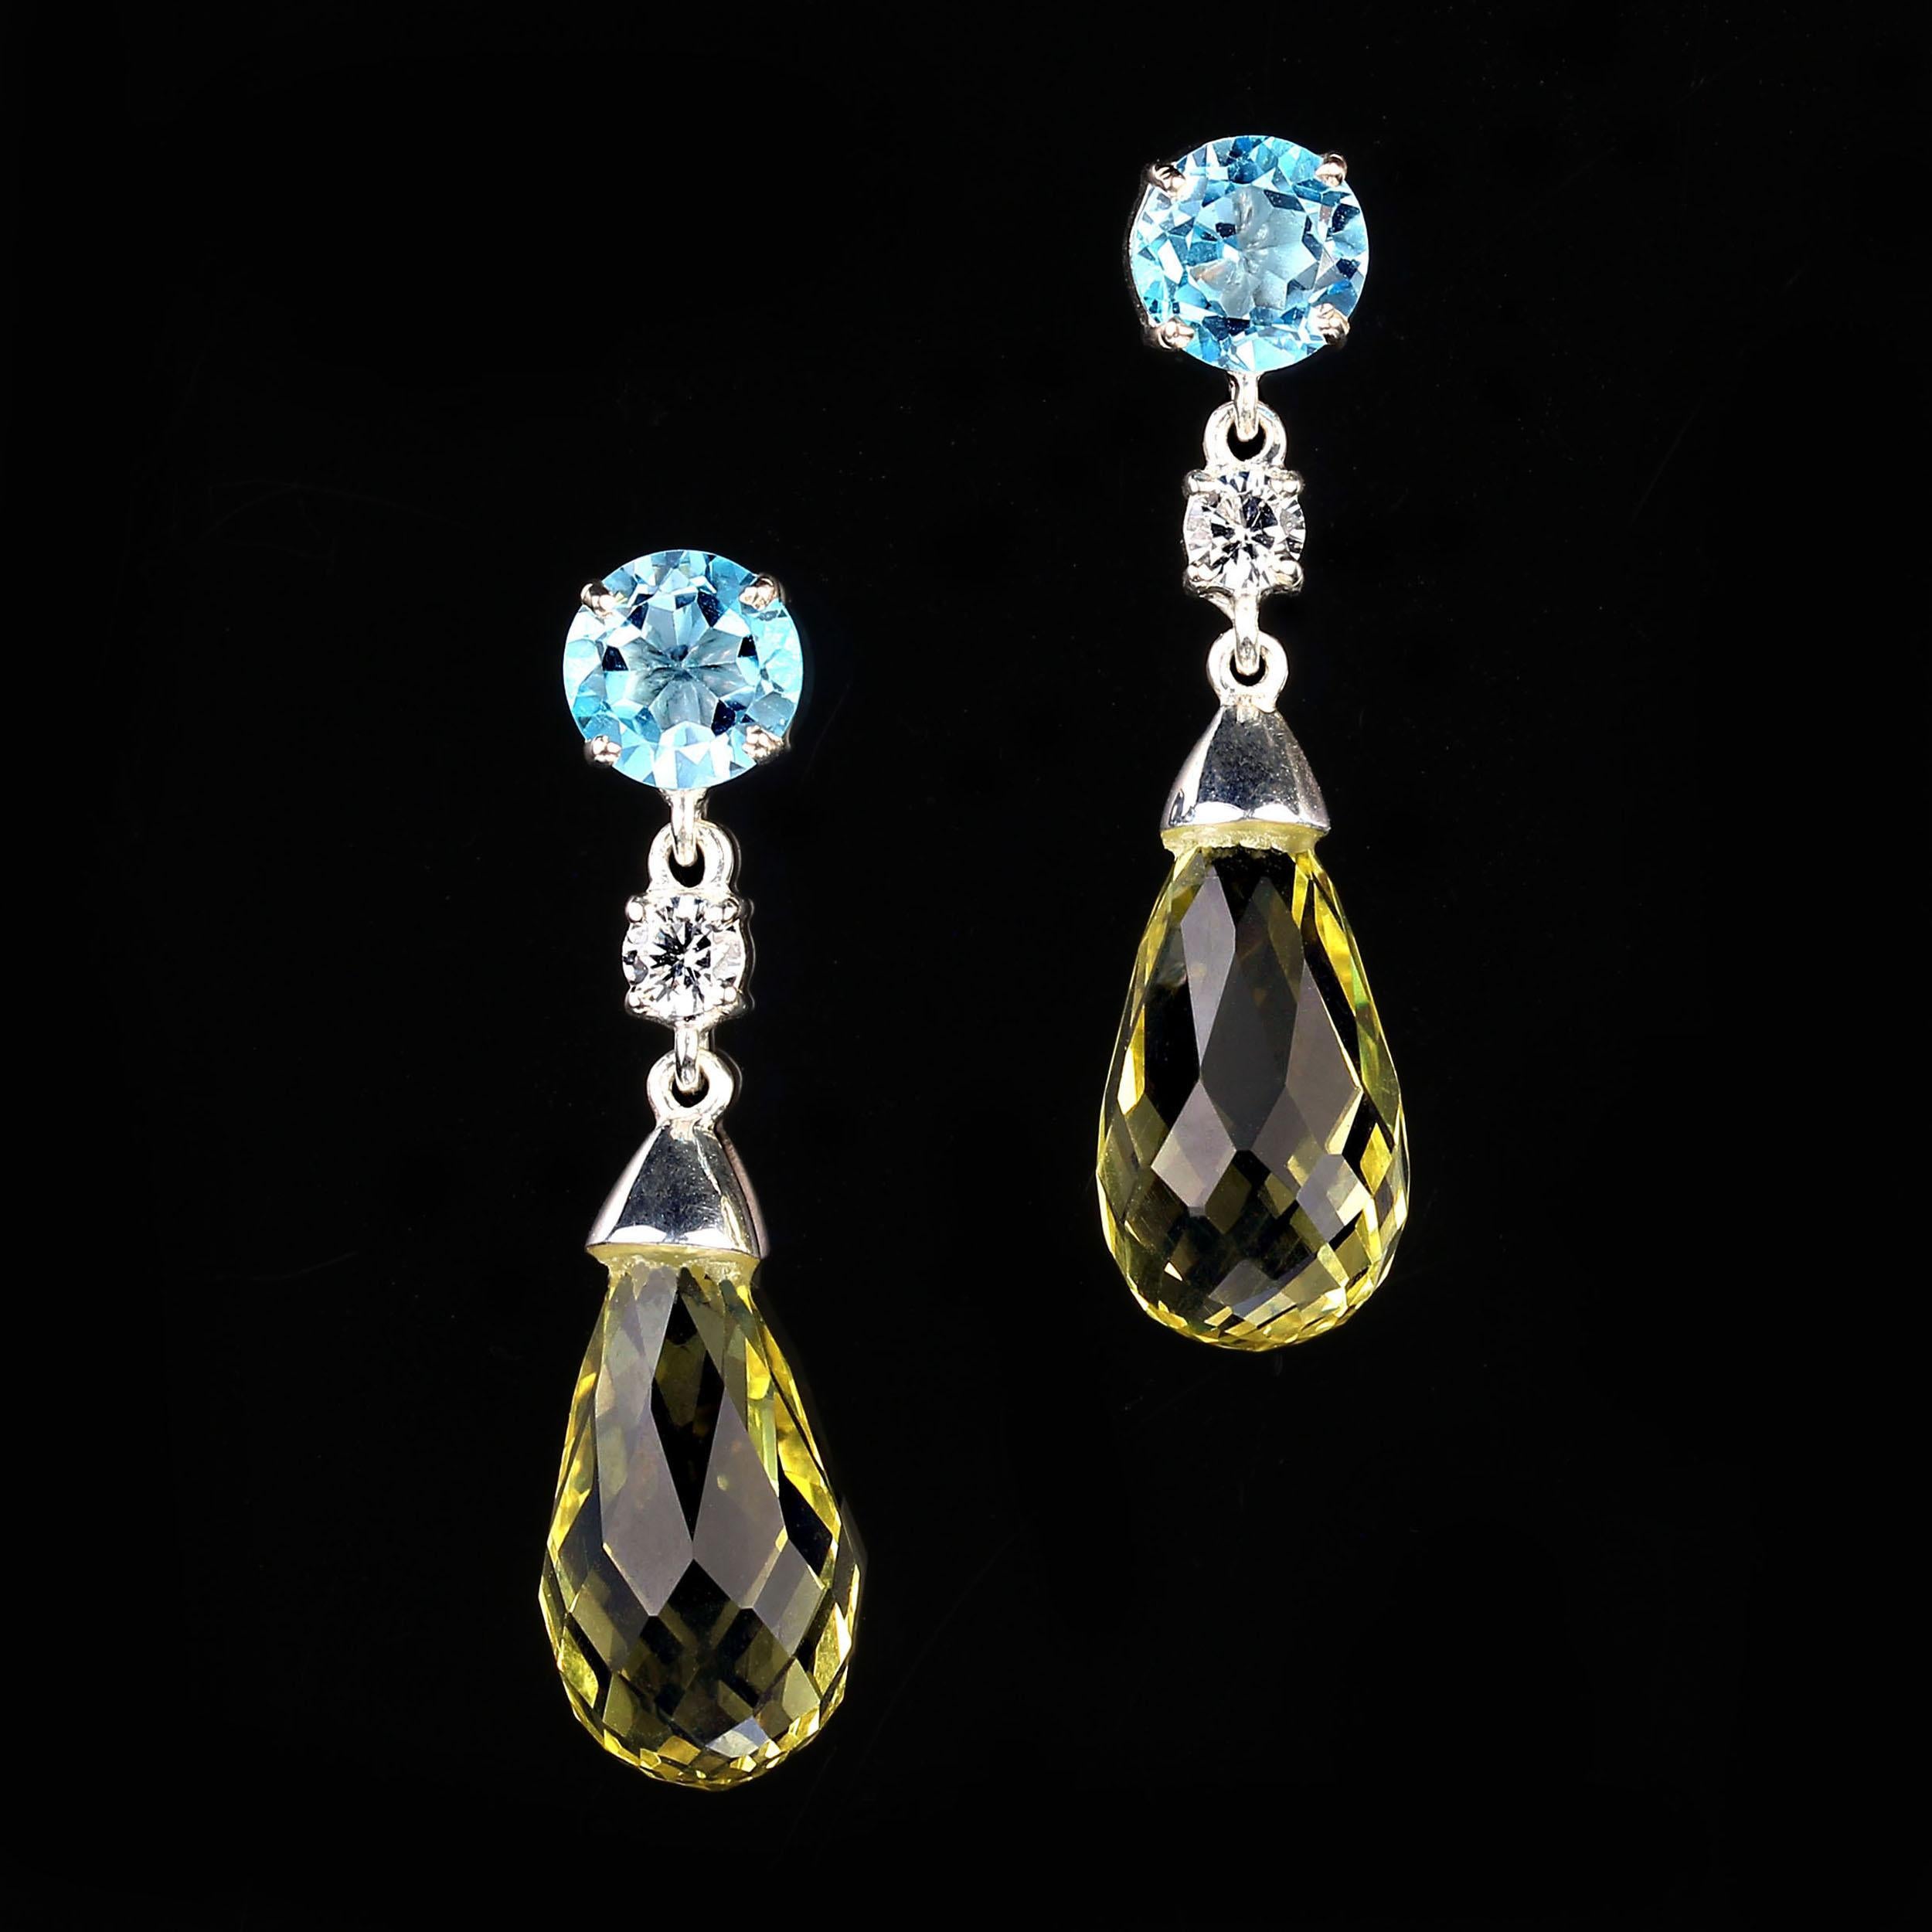 Artisan AJD Elegant Dangle Lemon Quartz and Blue Topaz Sterling Silver Earrings For Sale